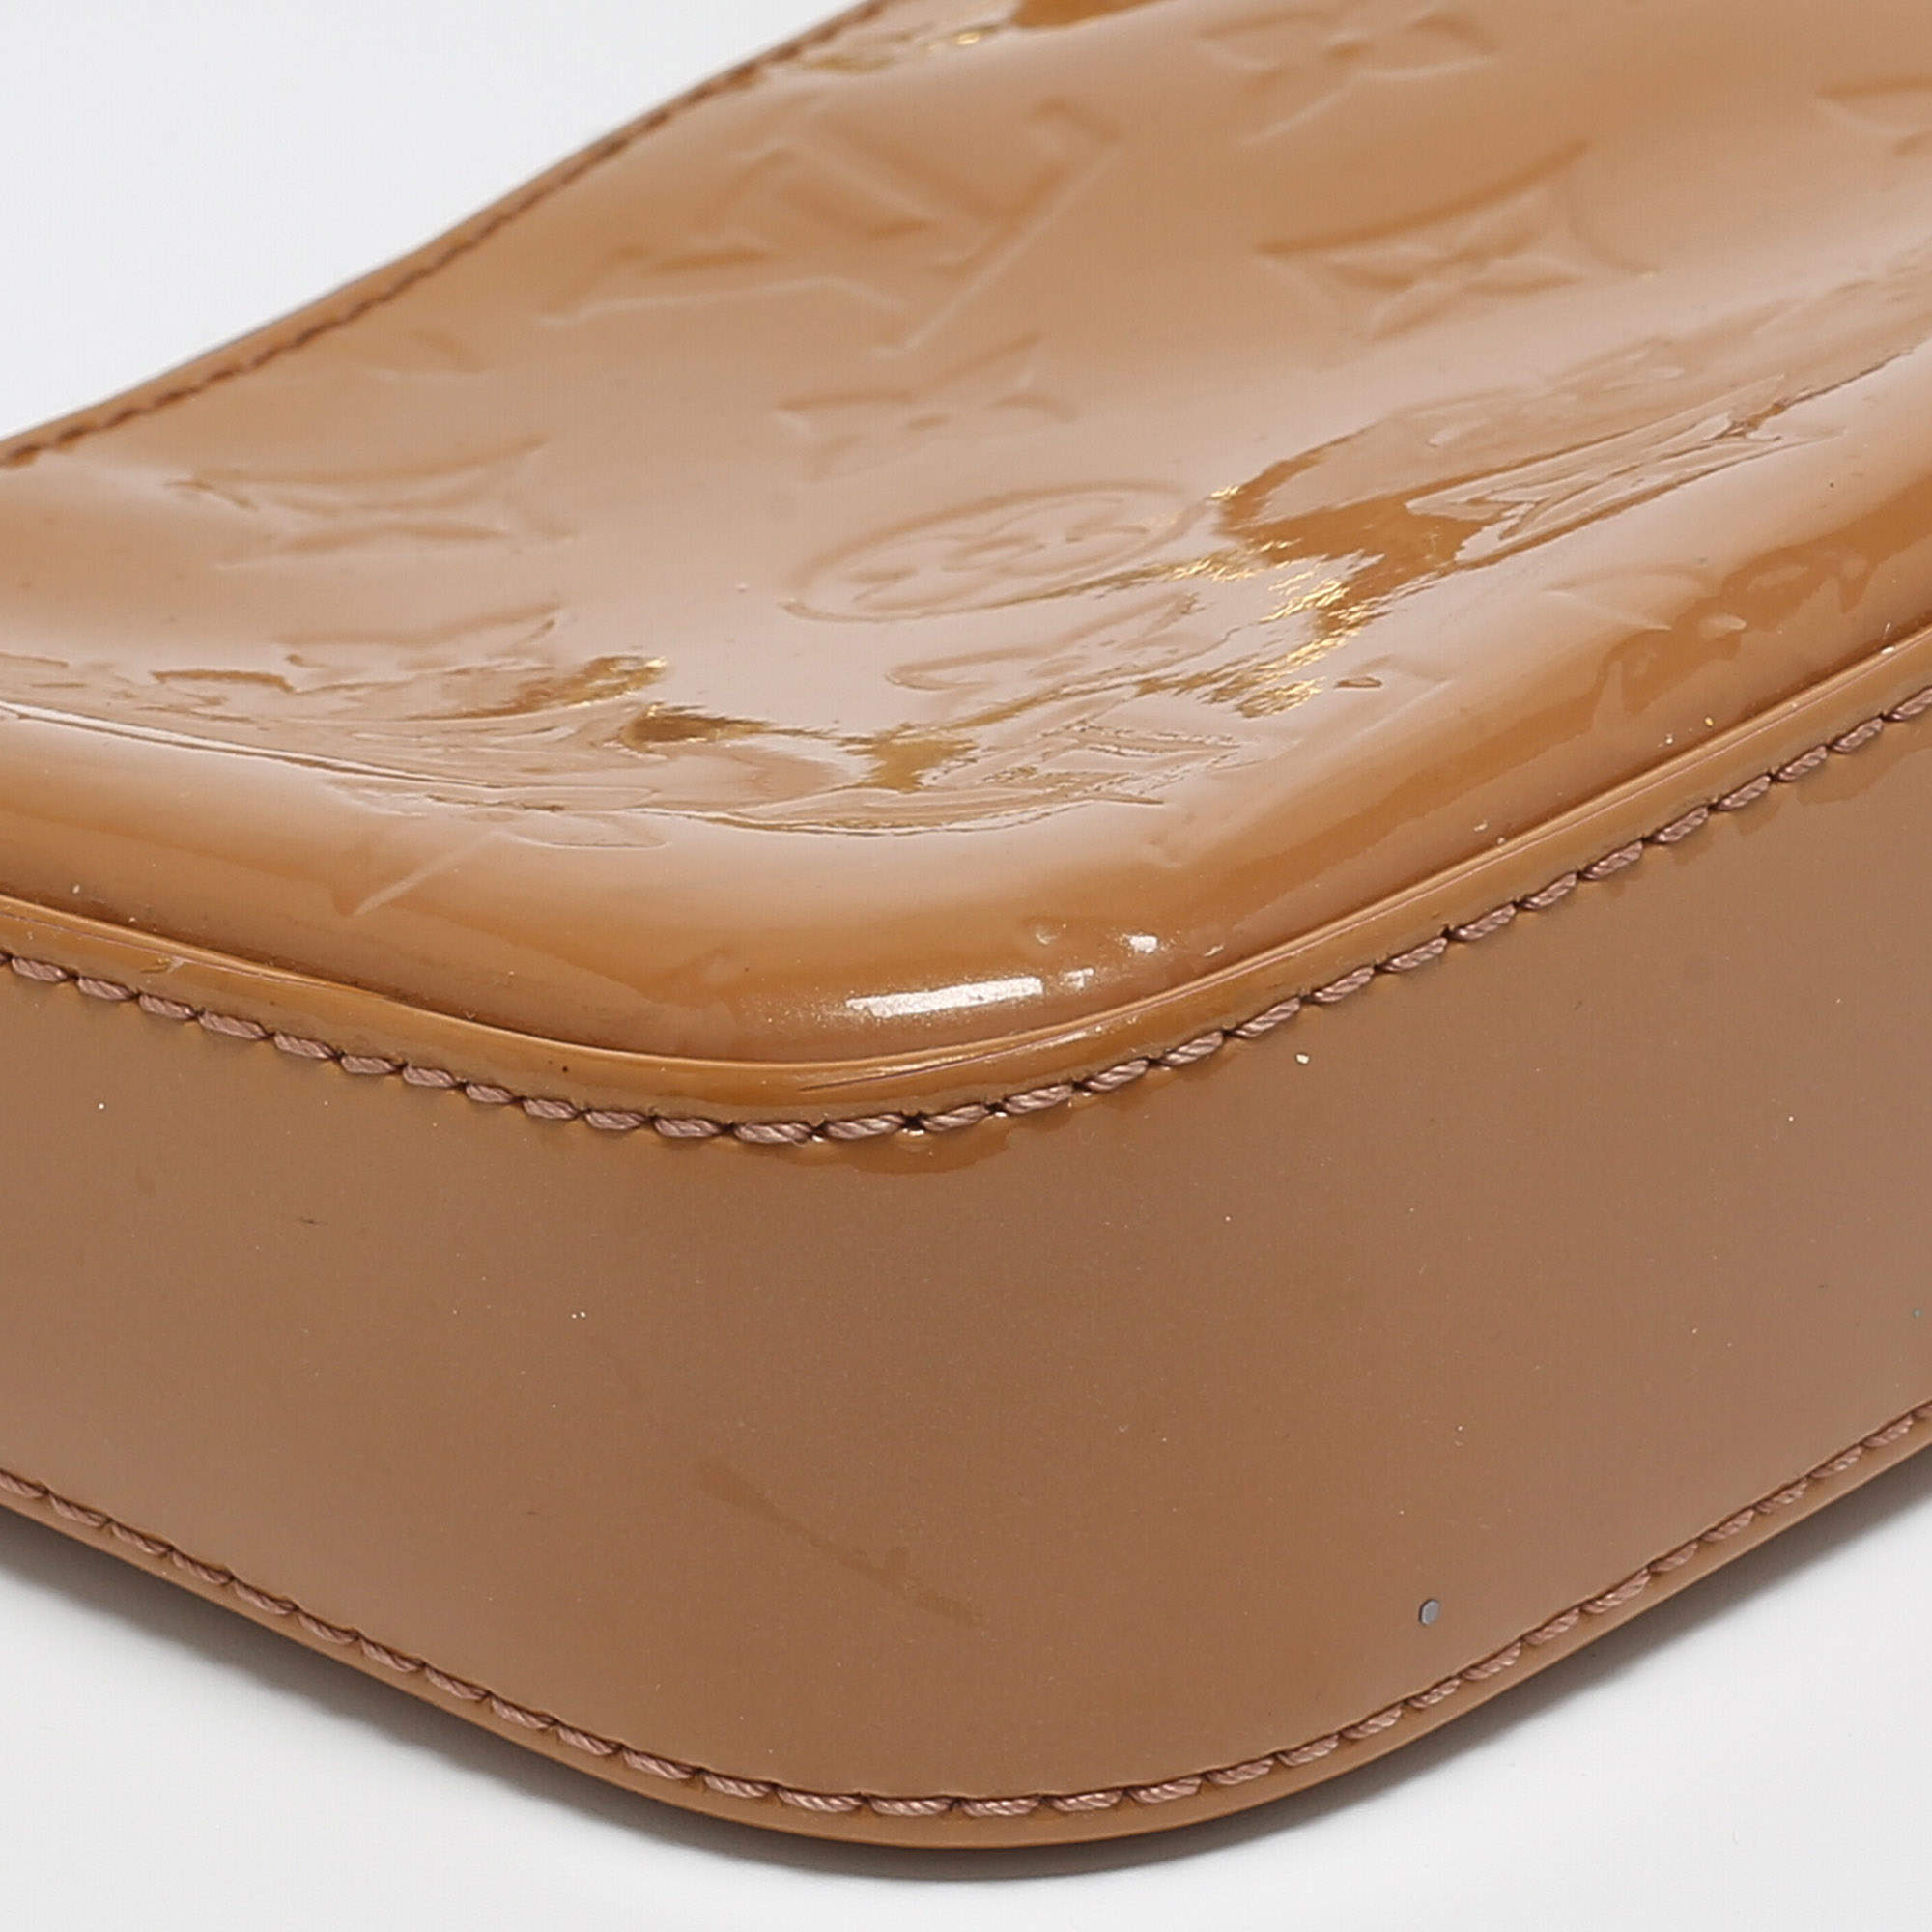 Louis Vuitton - Authenticated Pochette Accessoire Handbag - Leather Beige Plain for Women, Very Good Condition